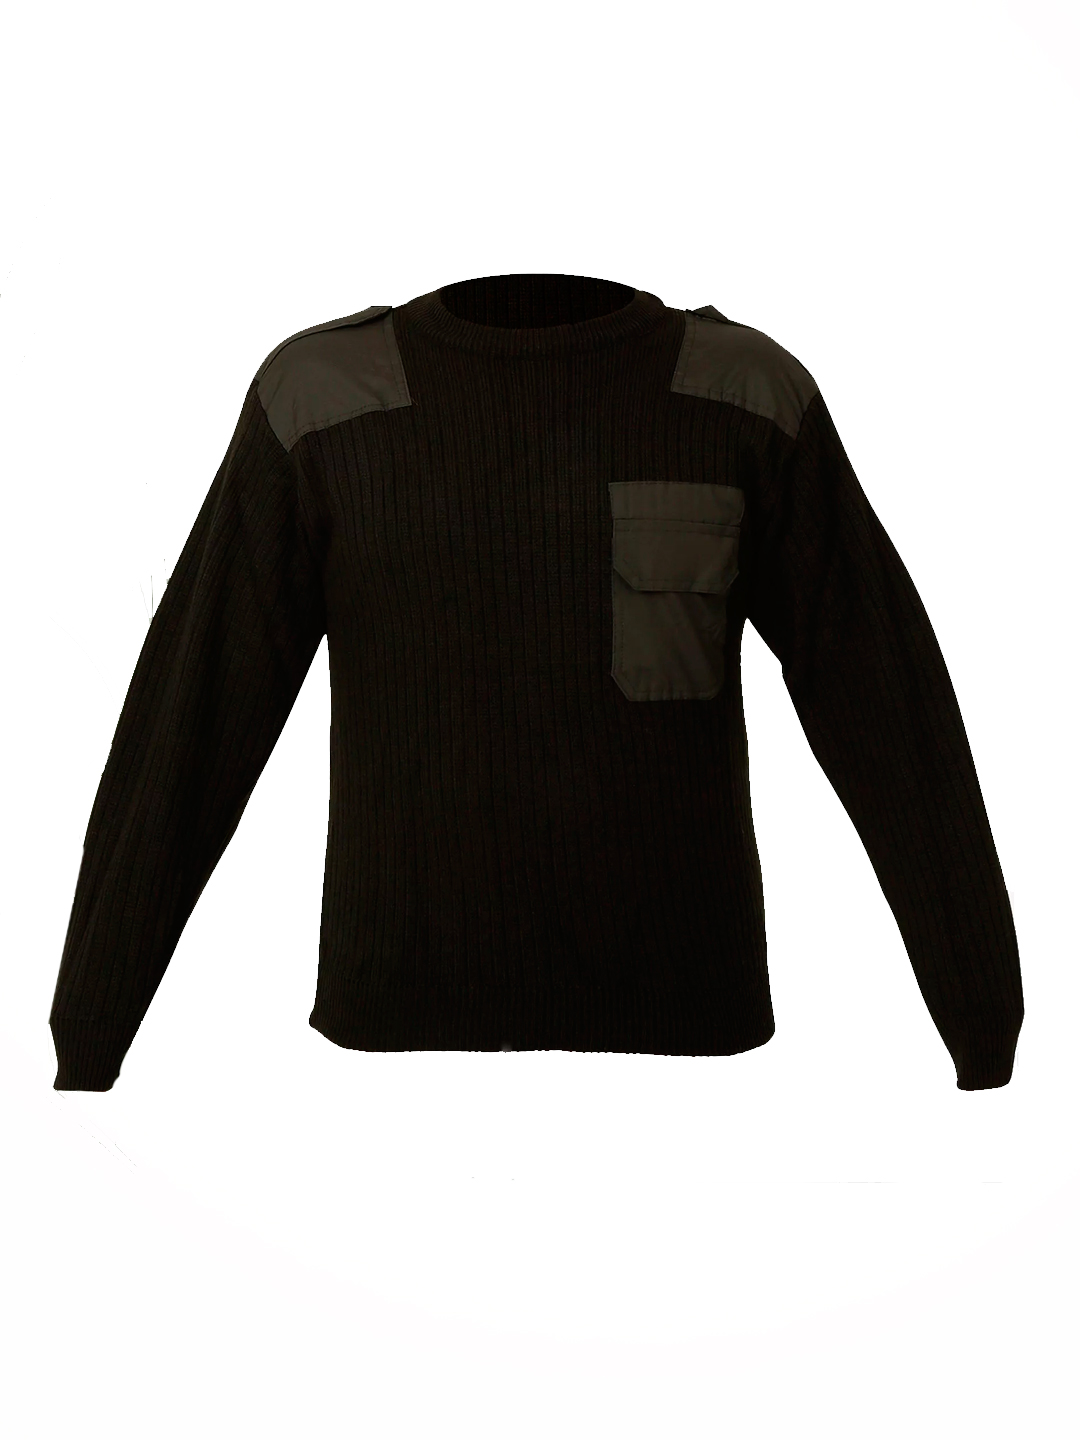 Джемпер форменный с накладками, О-образный (черный)